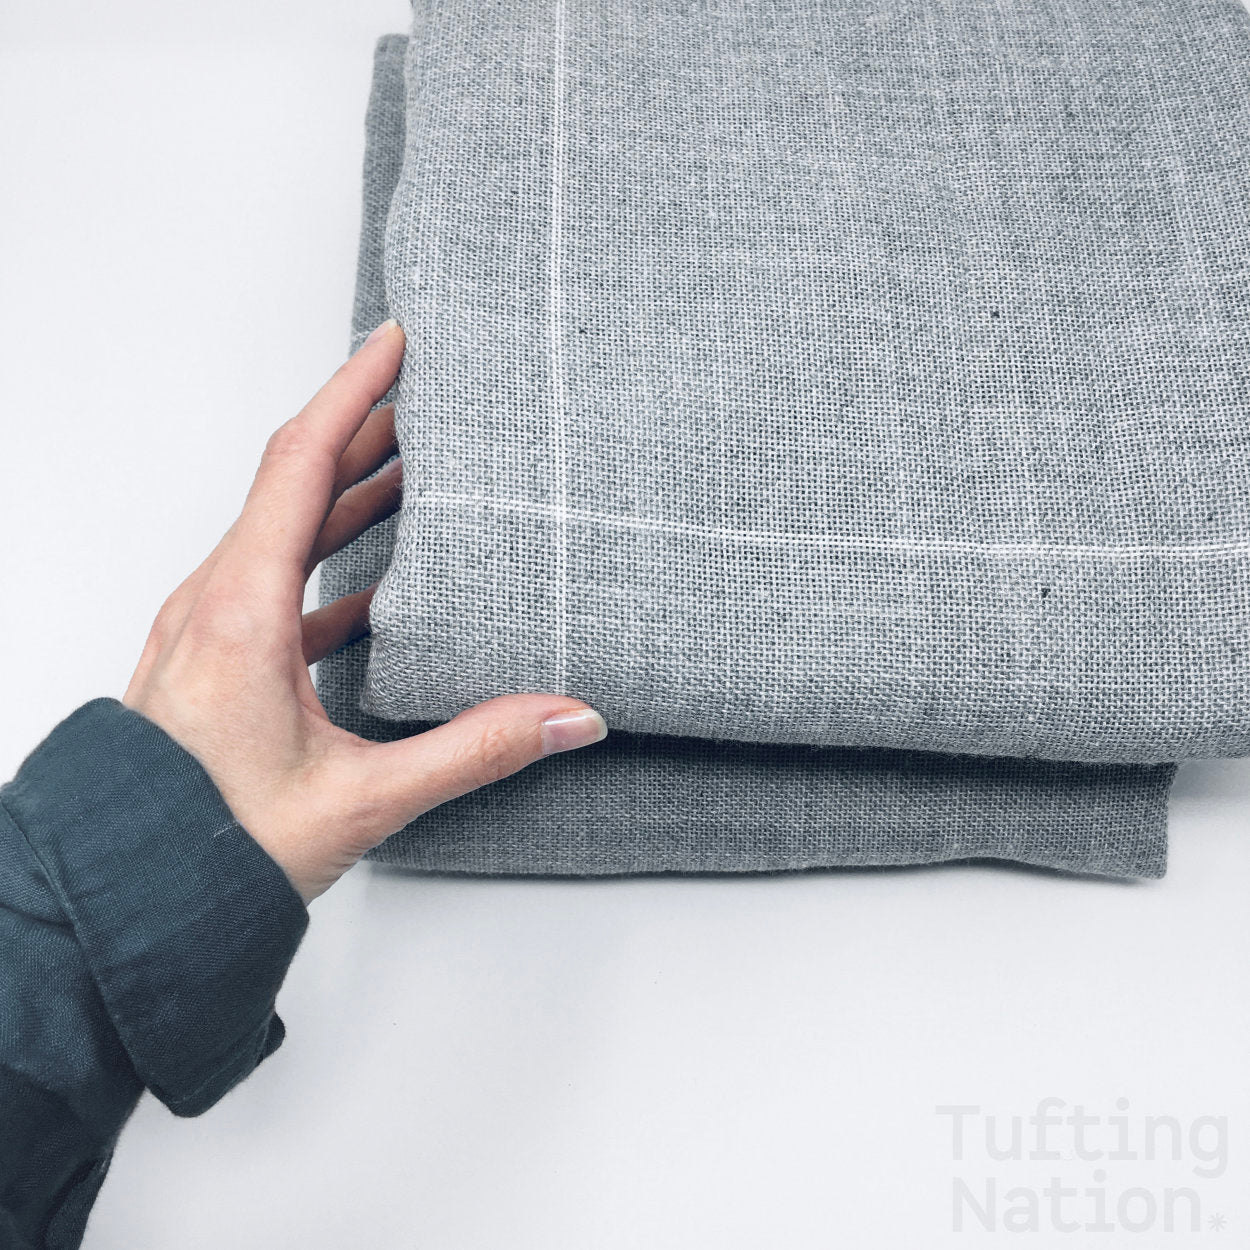 Rug Tufting Canvas | Gray Tifting Gun Fabric Material | TuftingNation